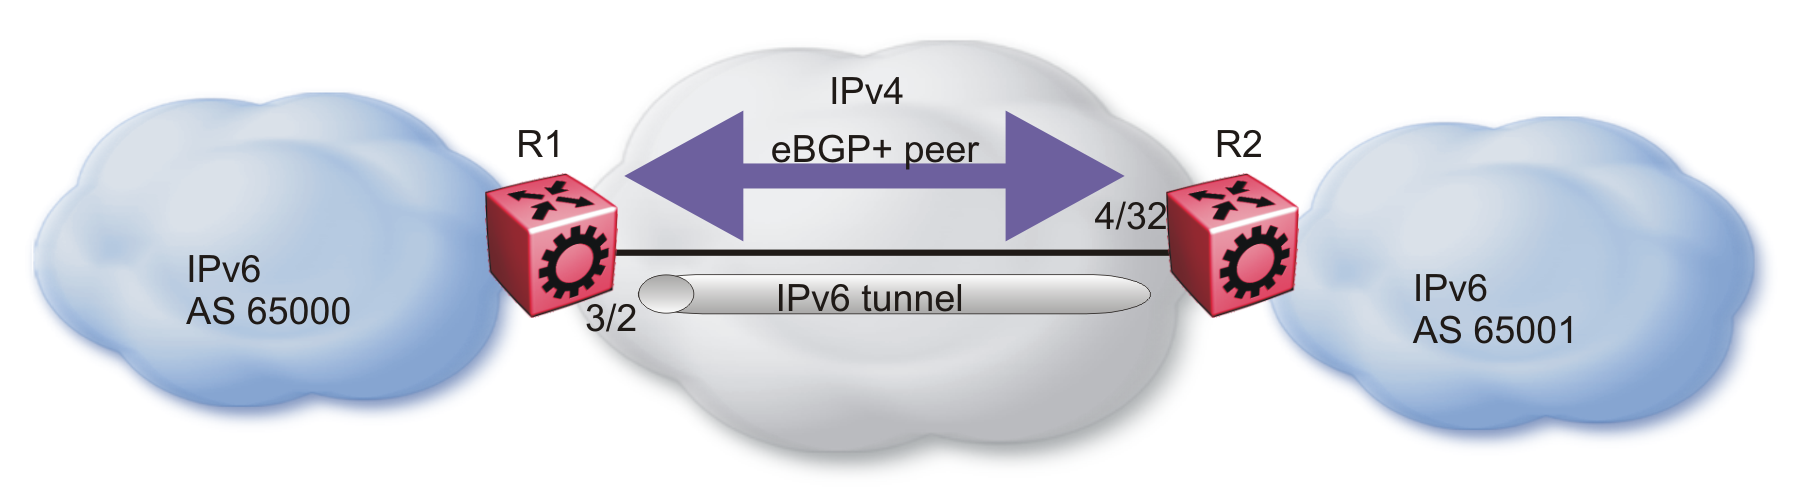 eBGP+ peers with IPv6 tunneling